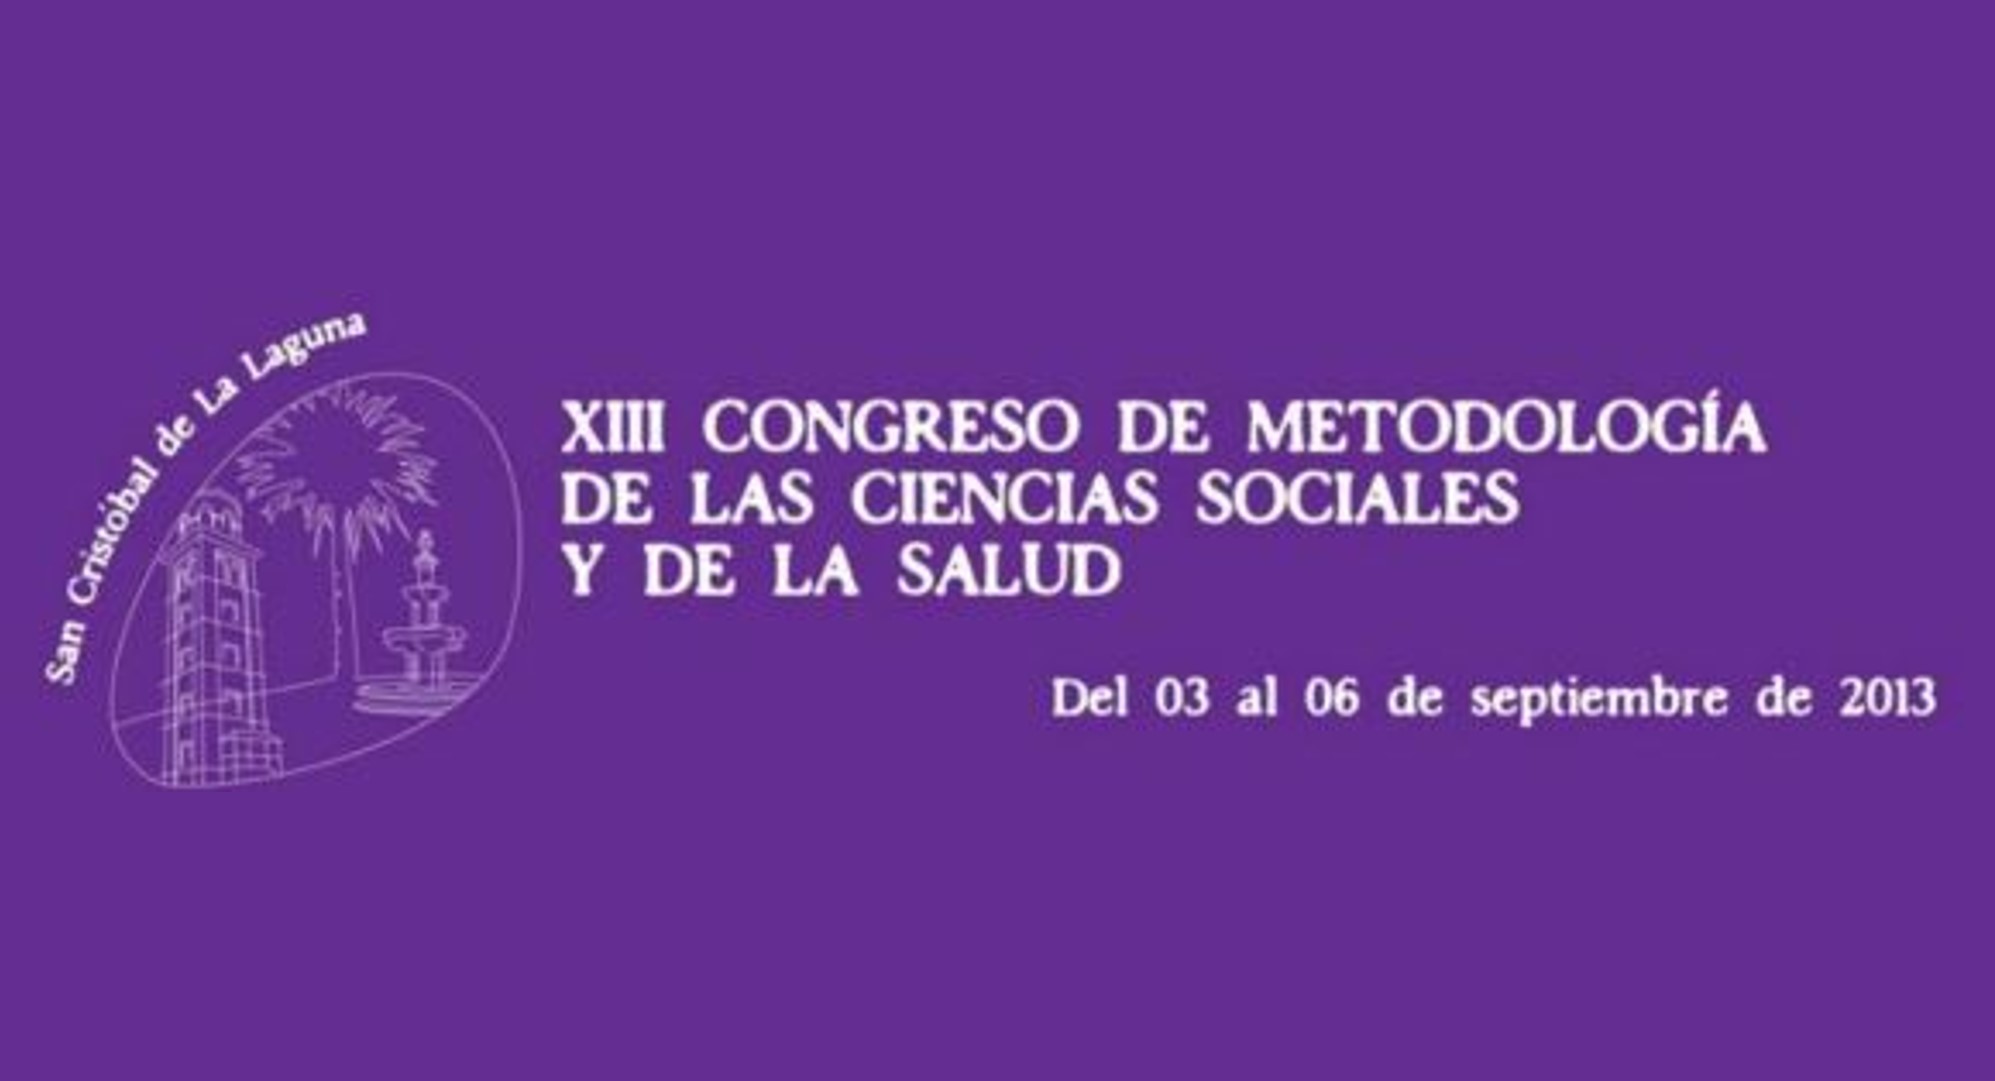    XIII Congreso de Metodología de las Ciencias Sociales y de la Salud